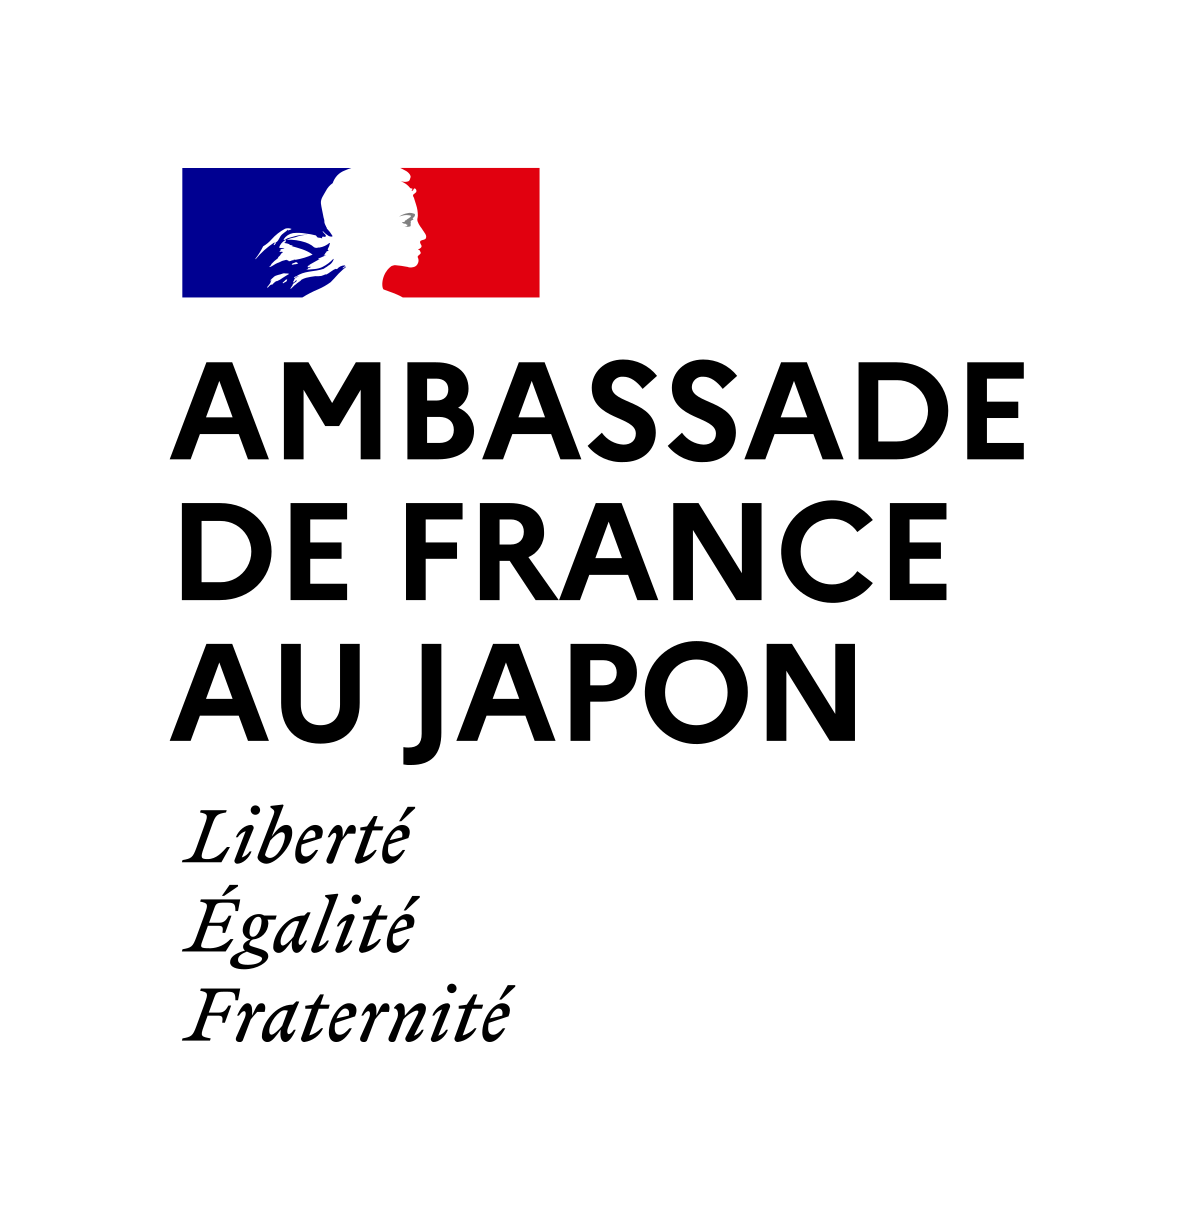 Ambassade de France au Japon